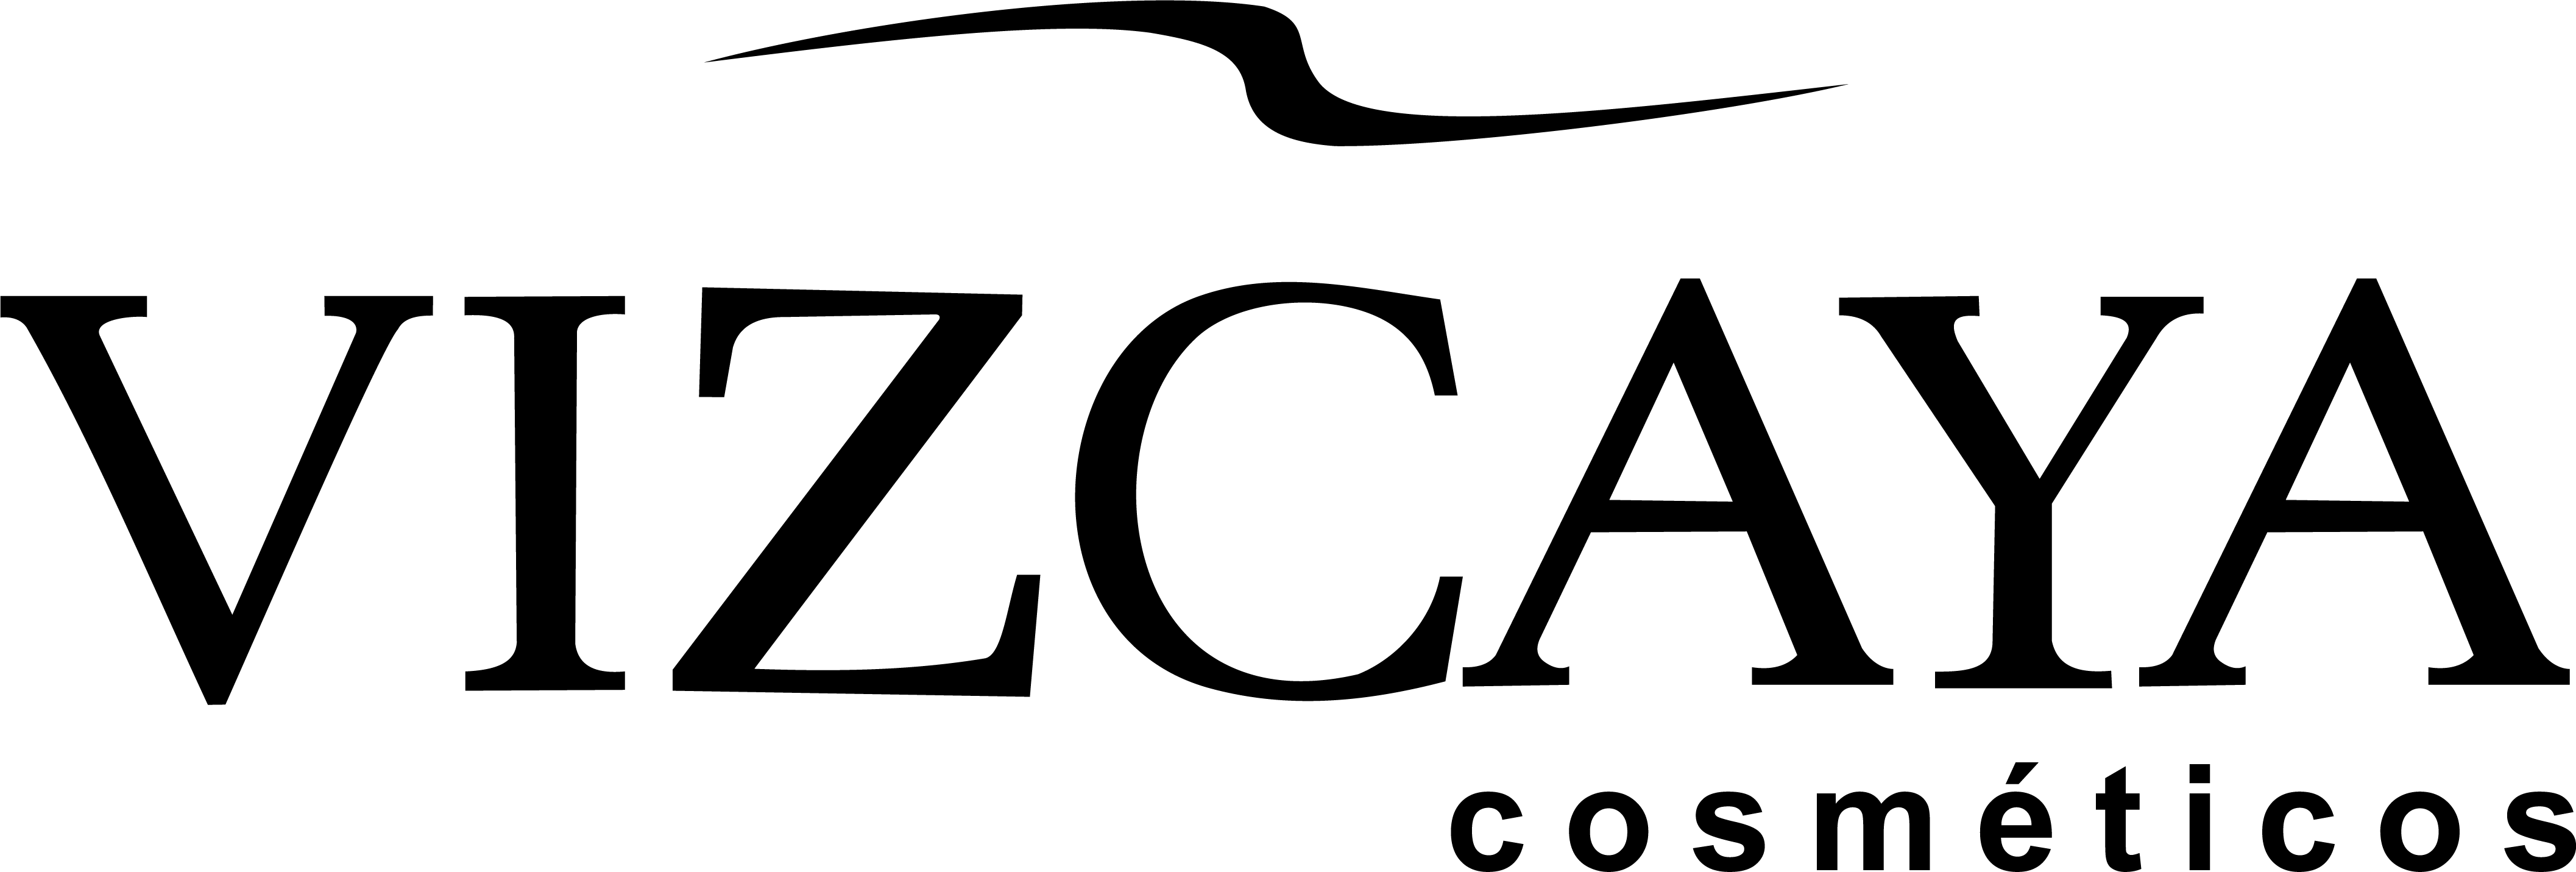 Vizcaya-logo